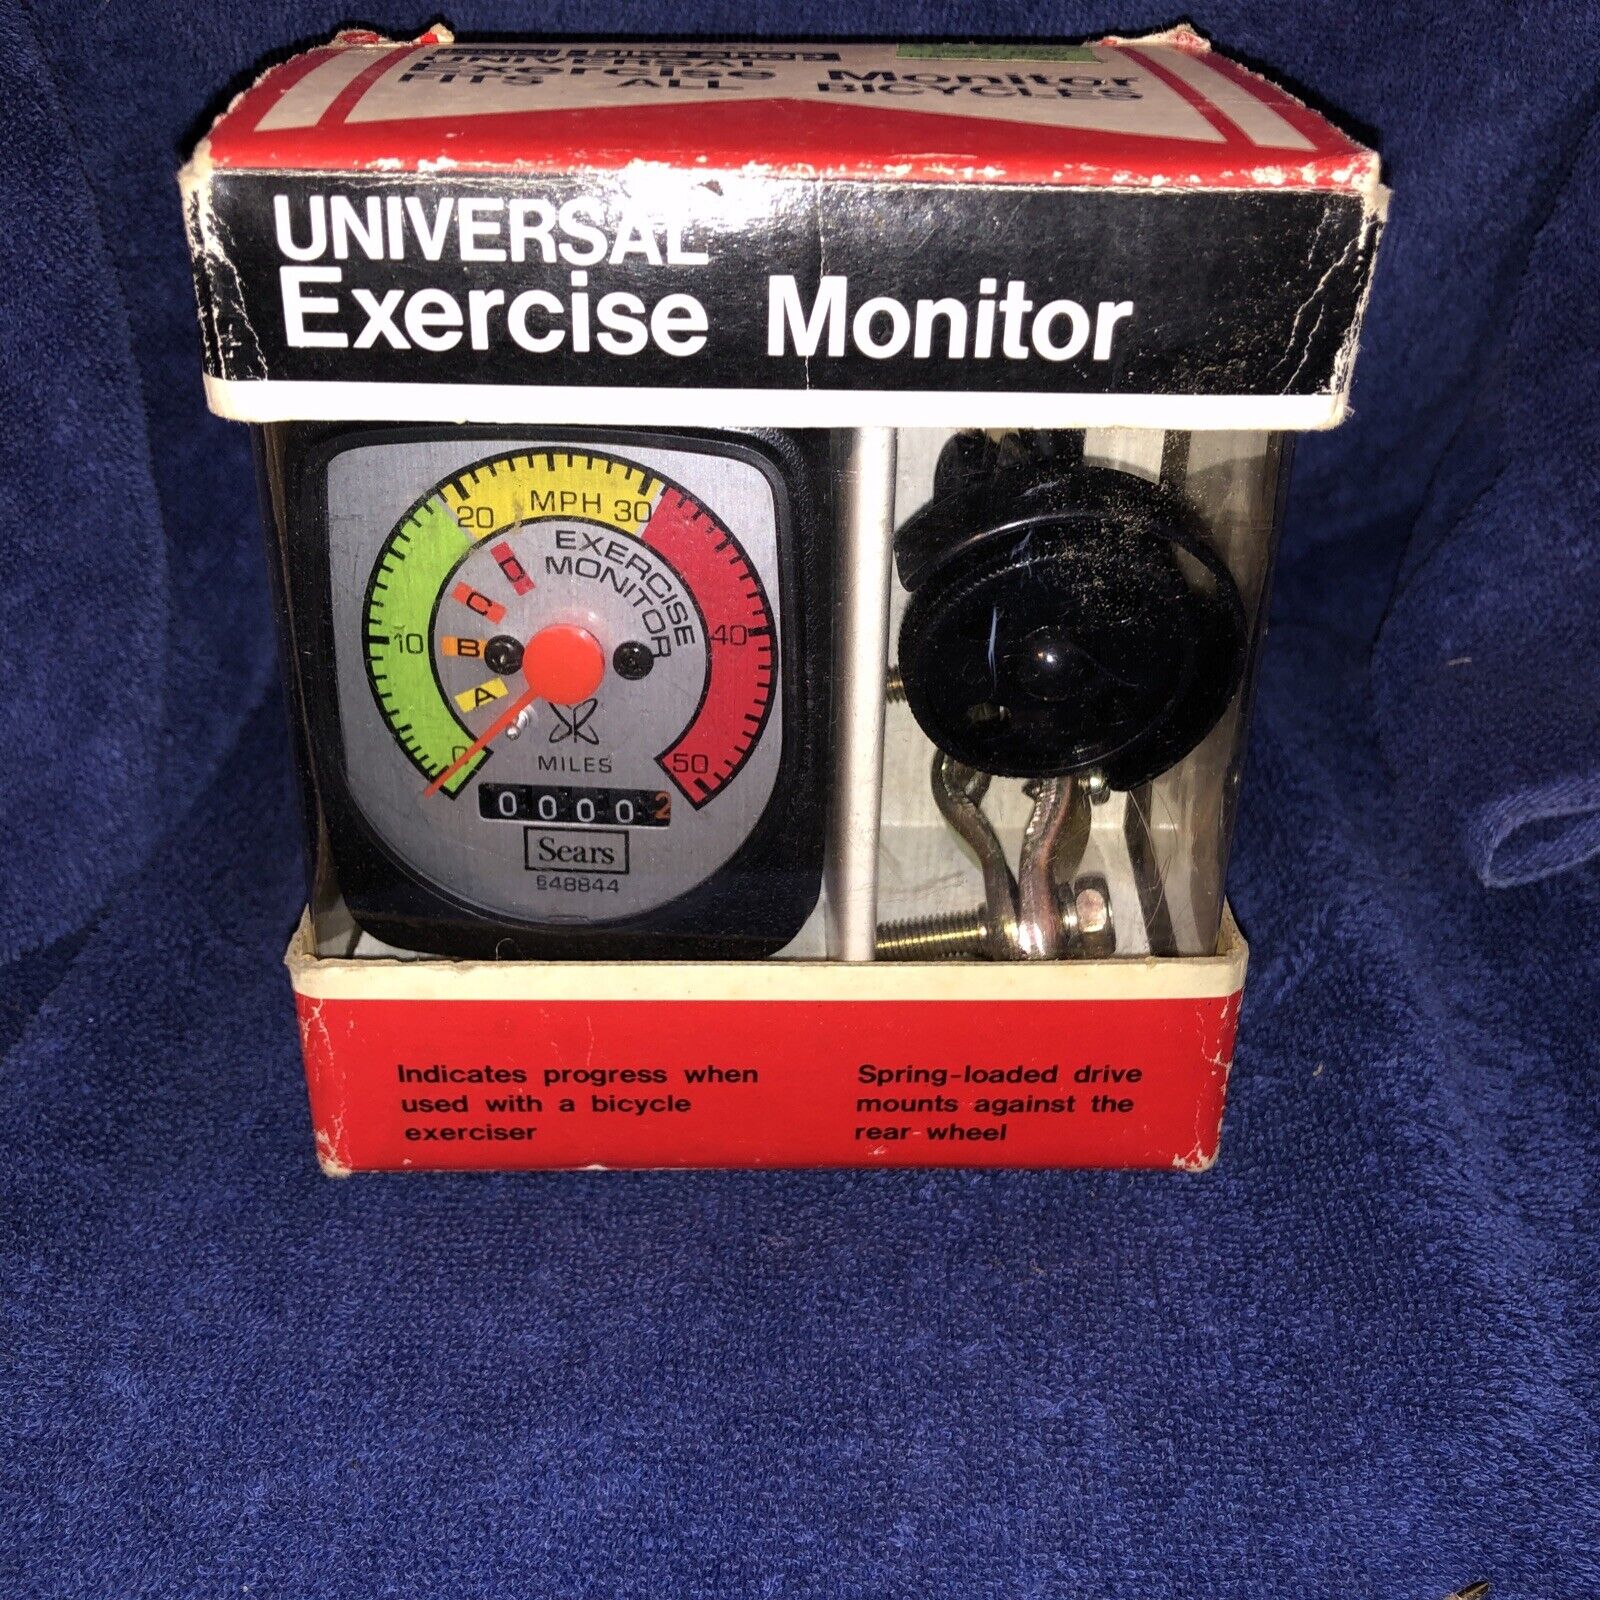 Universal Exercise Monitor for Fitness Stationary Bike Exercise Bike Wheel Mount